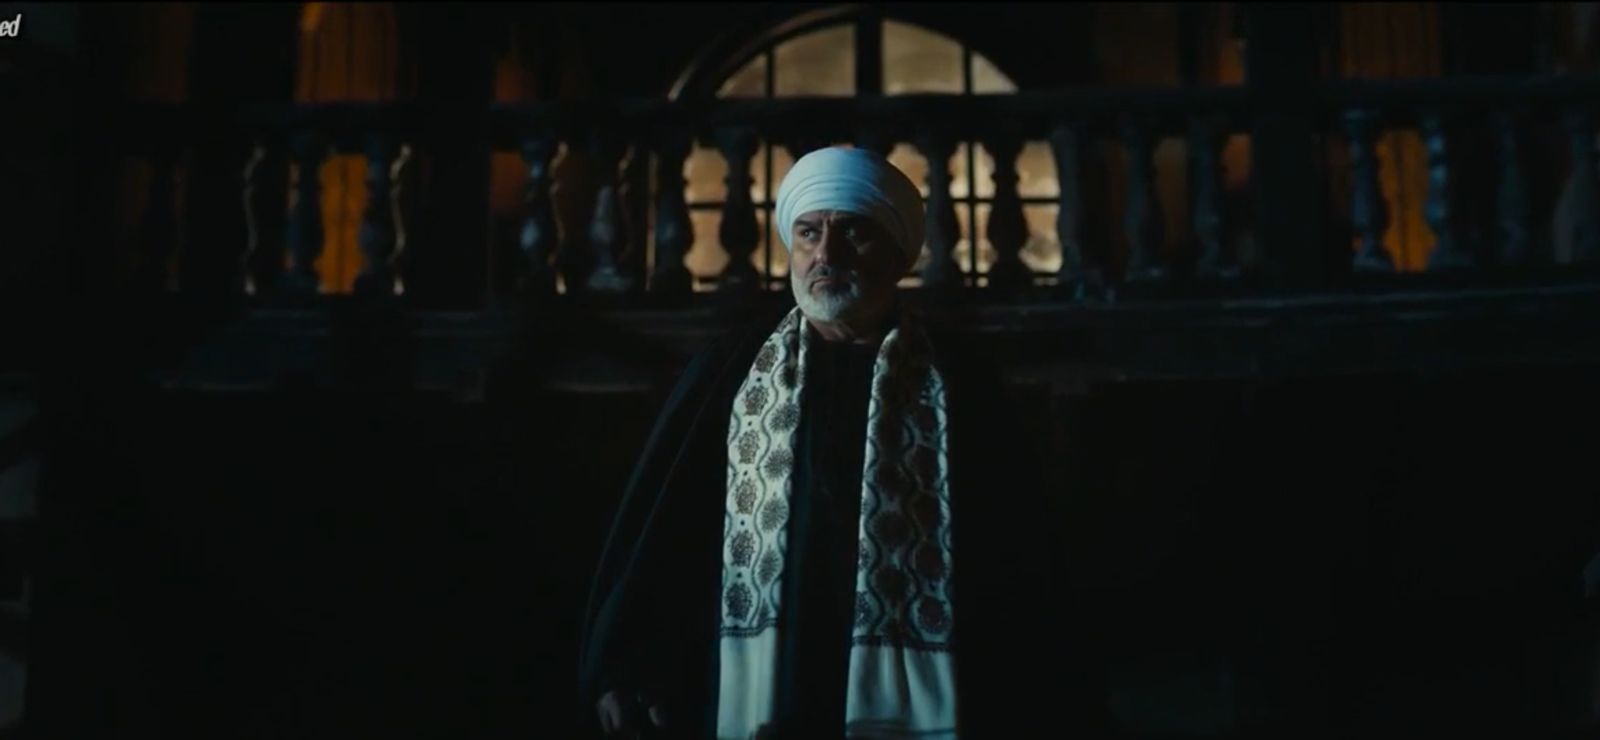 مسلسل عملة نادرة الحلقة 5  كمال أبو رية يتفاجأ بوجود نيللي كريم في منزله (1)